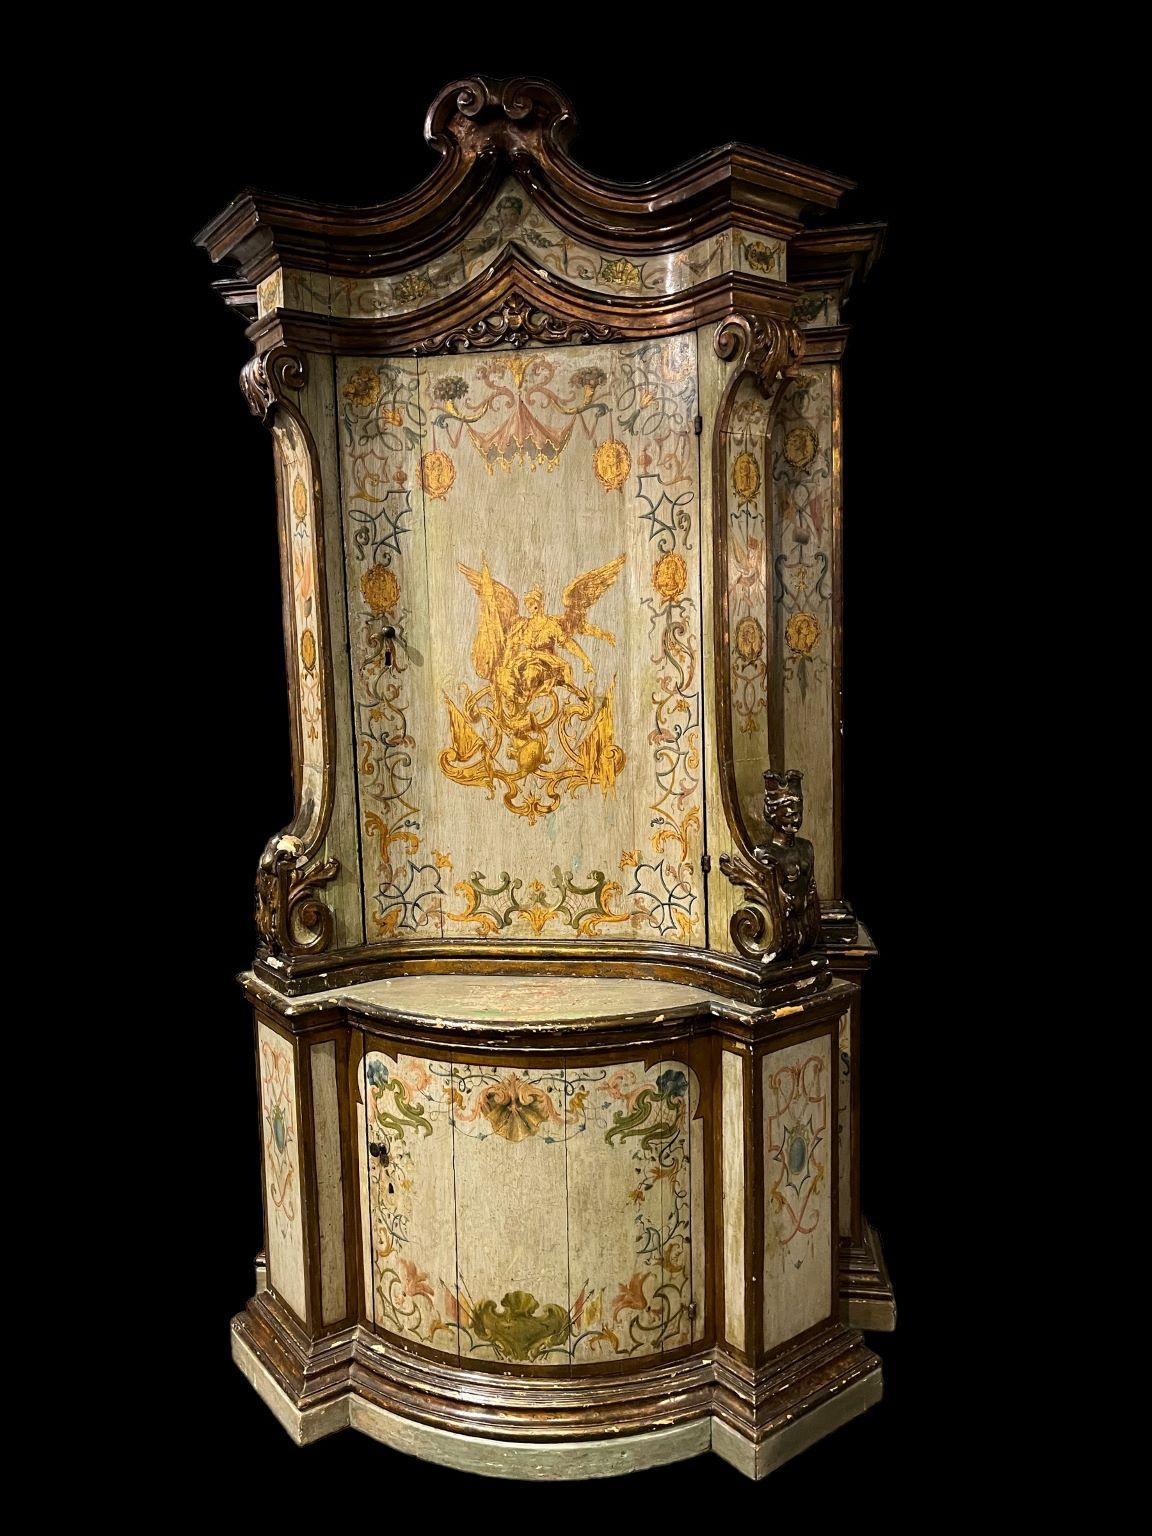 Außergewöhnliche venezianische 18TH Jahrhundert Italienisch gemalt und Giltwood Kabinett.  Ein unglaublicher neun Fuß großer Schrank aus dem Nachlass der verstorbenen Barbara Walters. Ein unglaubliches Schmuckstück für jeden Raum.  Der Zustand des